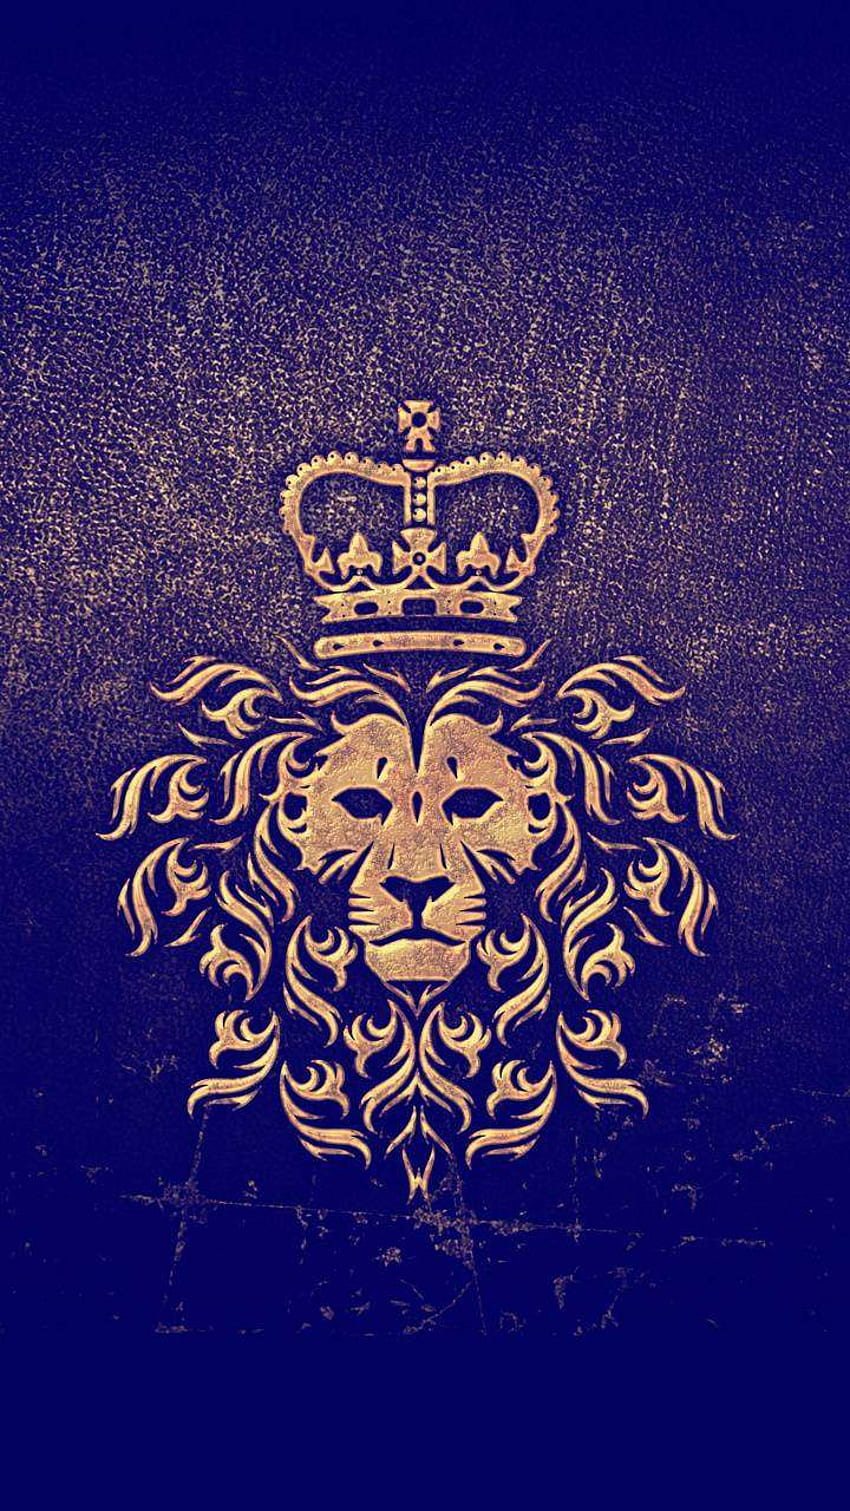 Blue lion king HD wallpapers | Pxfuel